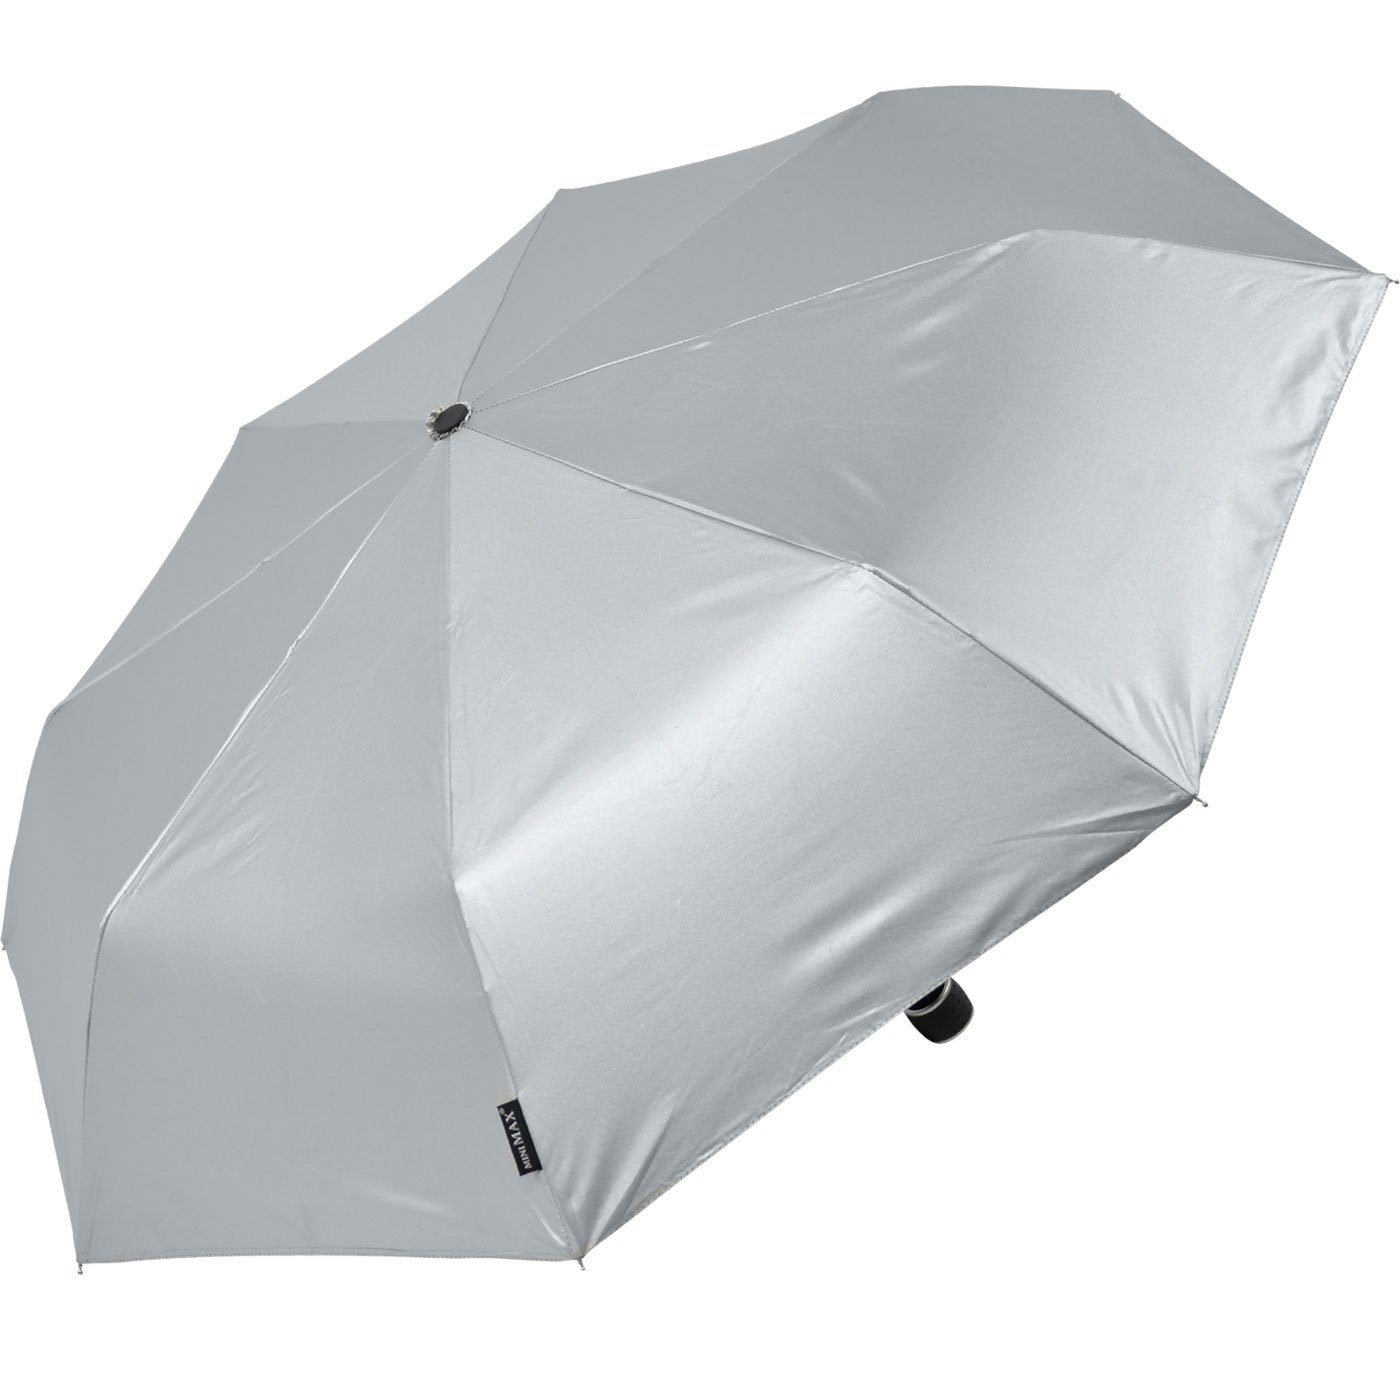 Impliva Taschenregenschirm miniMAX® leichter in Schirm Handöffner, silber passt kleiner Tasche jjede